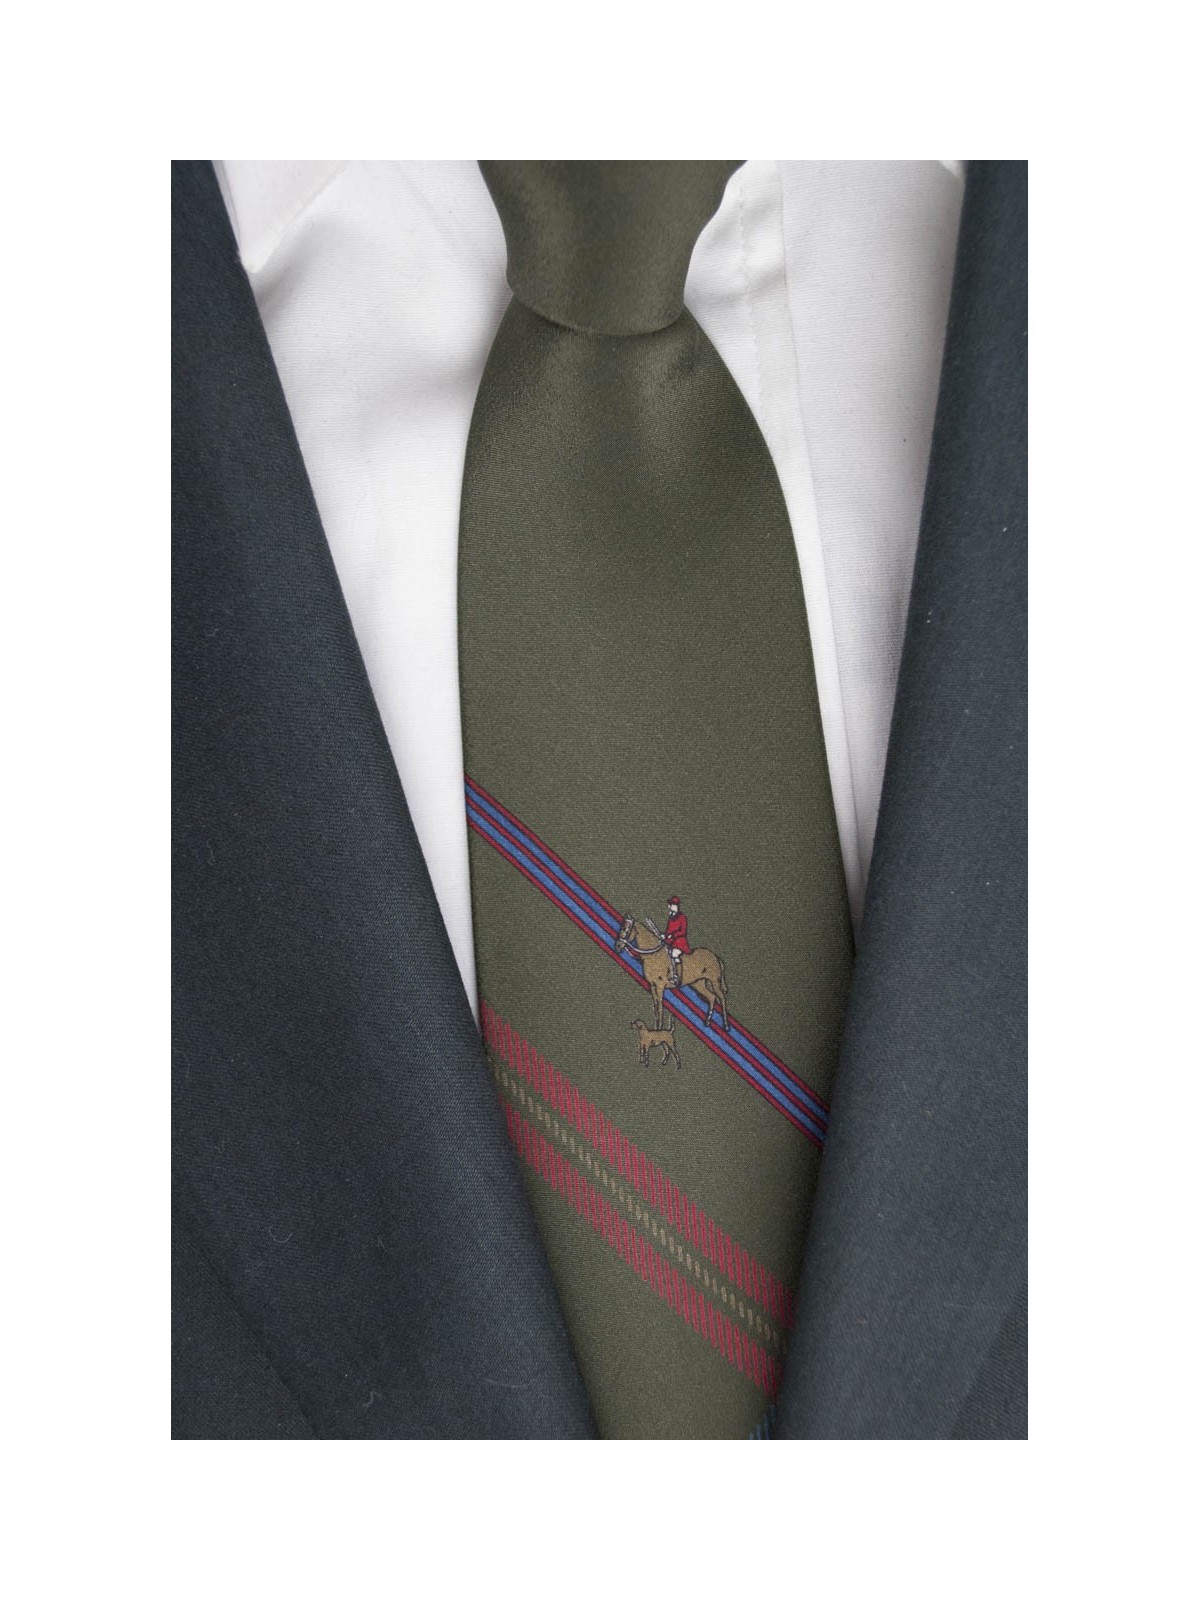 Cravatta Verde Scuro Cavallerizzo con Cane - 100% Pura Seta - Made in Italy